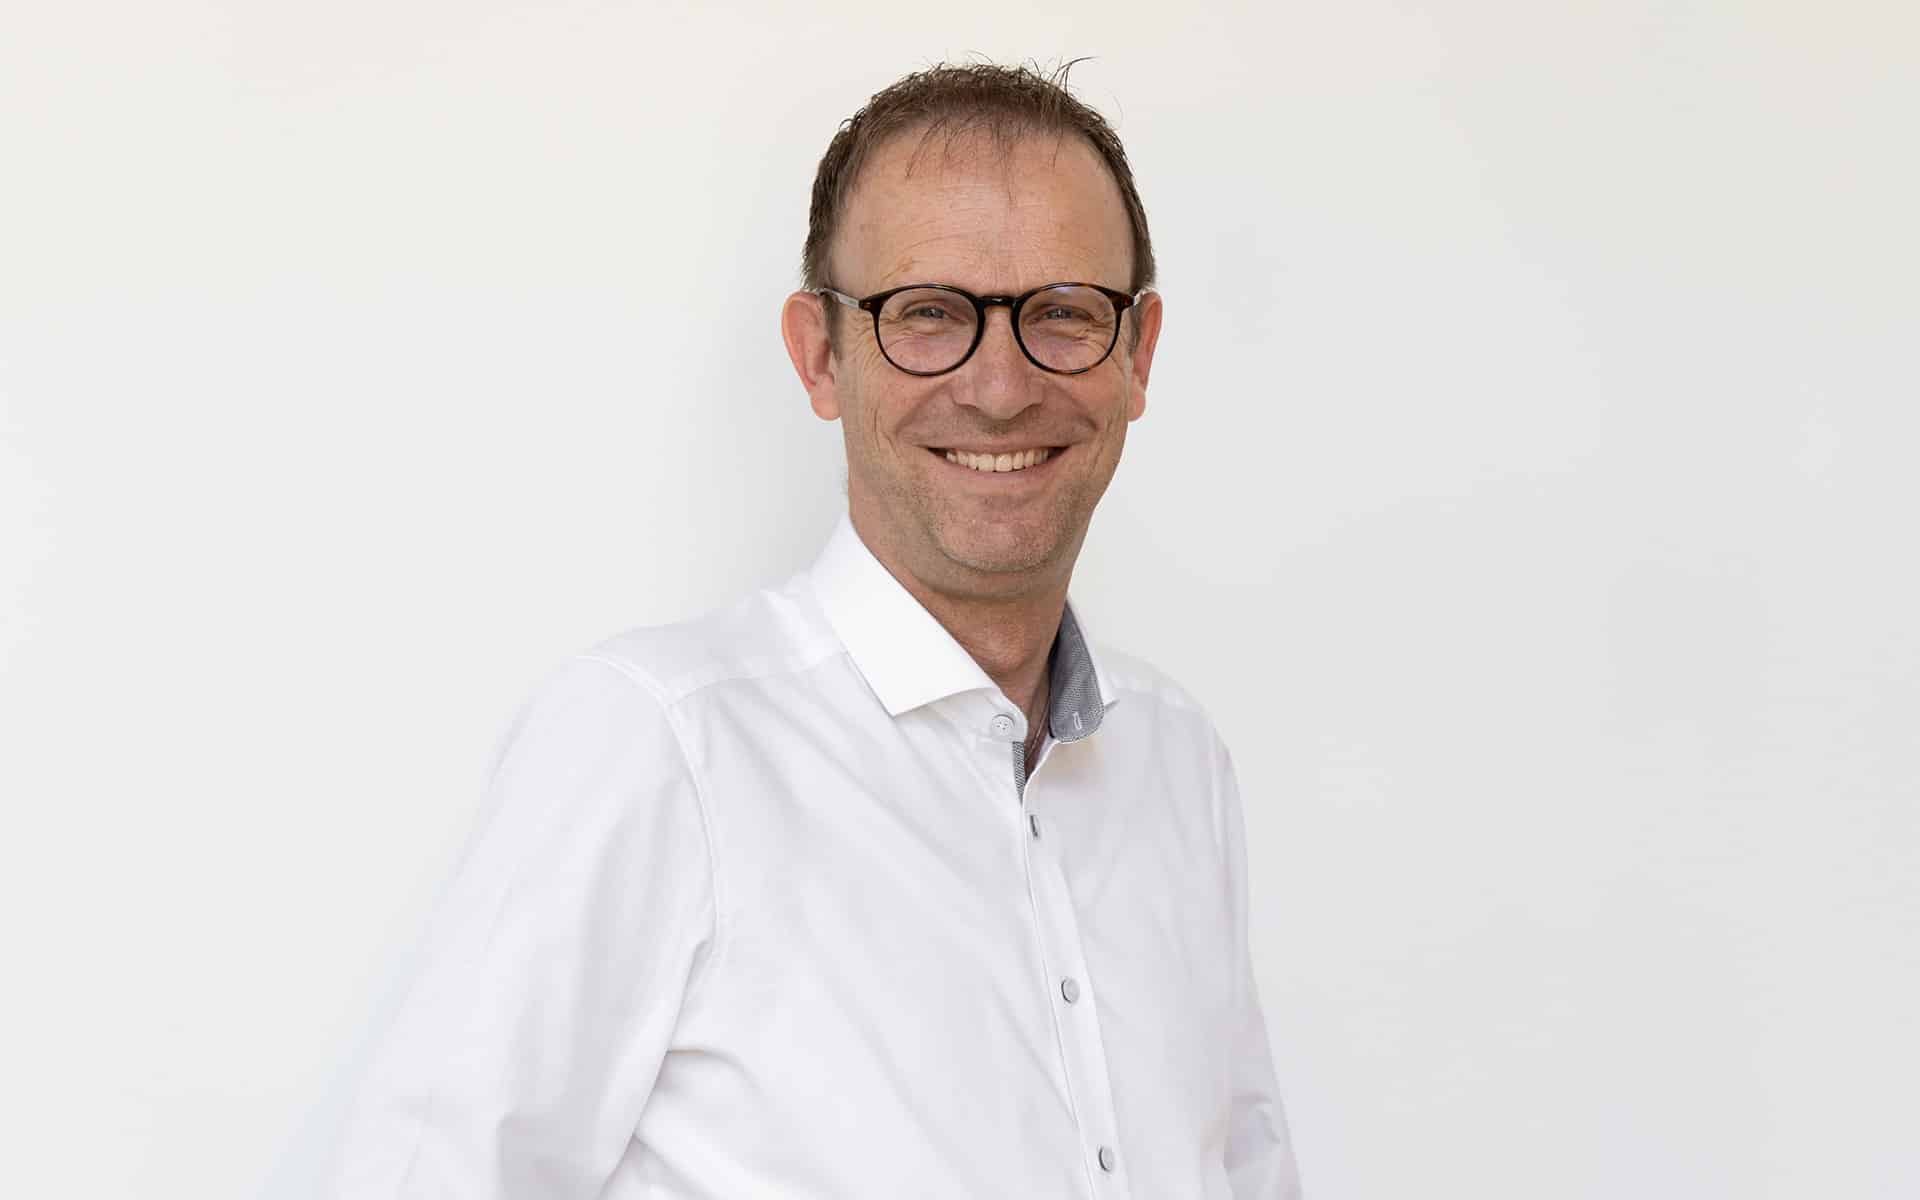 Außendienstmitarbeiter Stefan Wastl steht mit Brille und weißem Hemd vor weißer Wand und lacht.